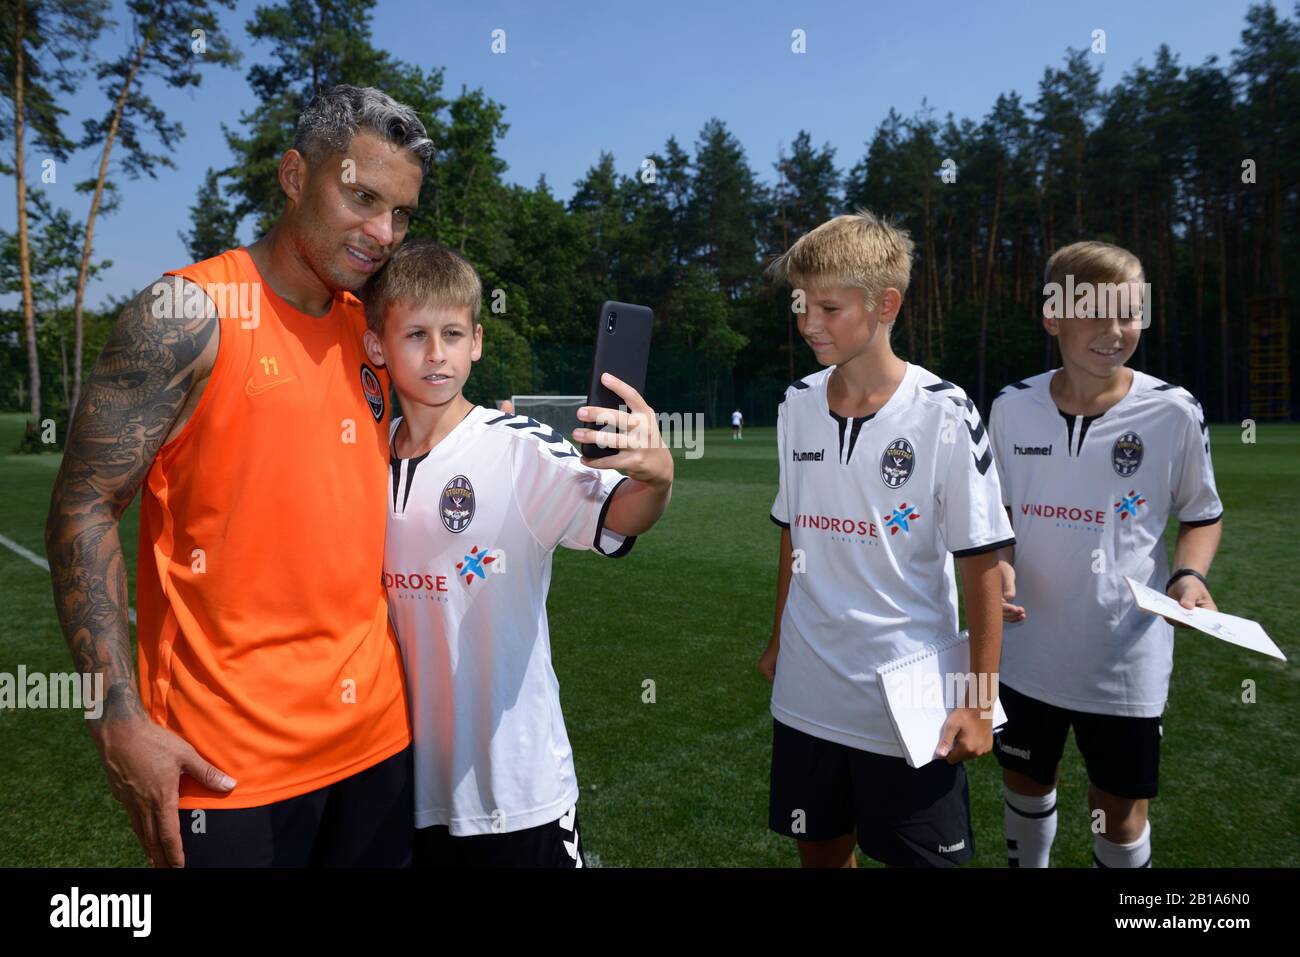 Fußballspieler Marlos, Shakhtar-Fußballmannschaft, signiert Autogramme für Kinder. August 2019. Kiew, Ukraine Stockfoto